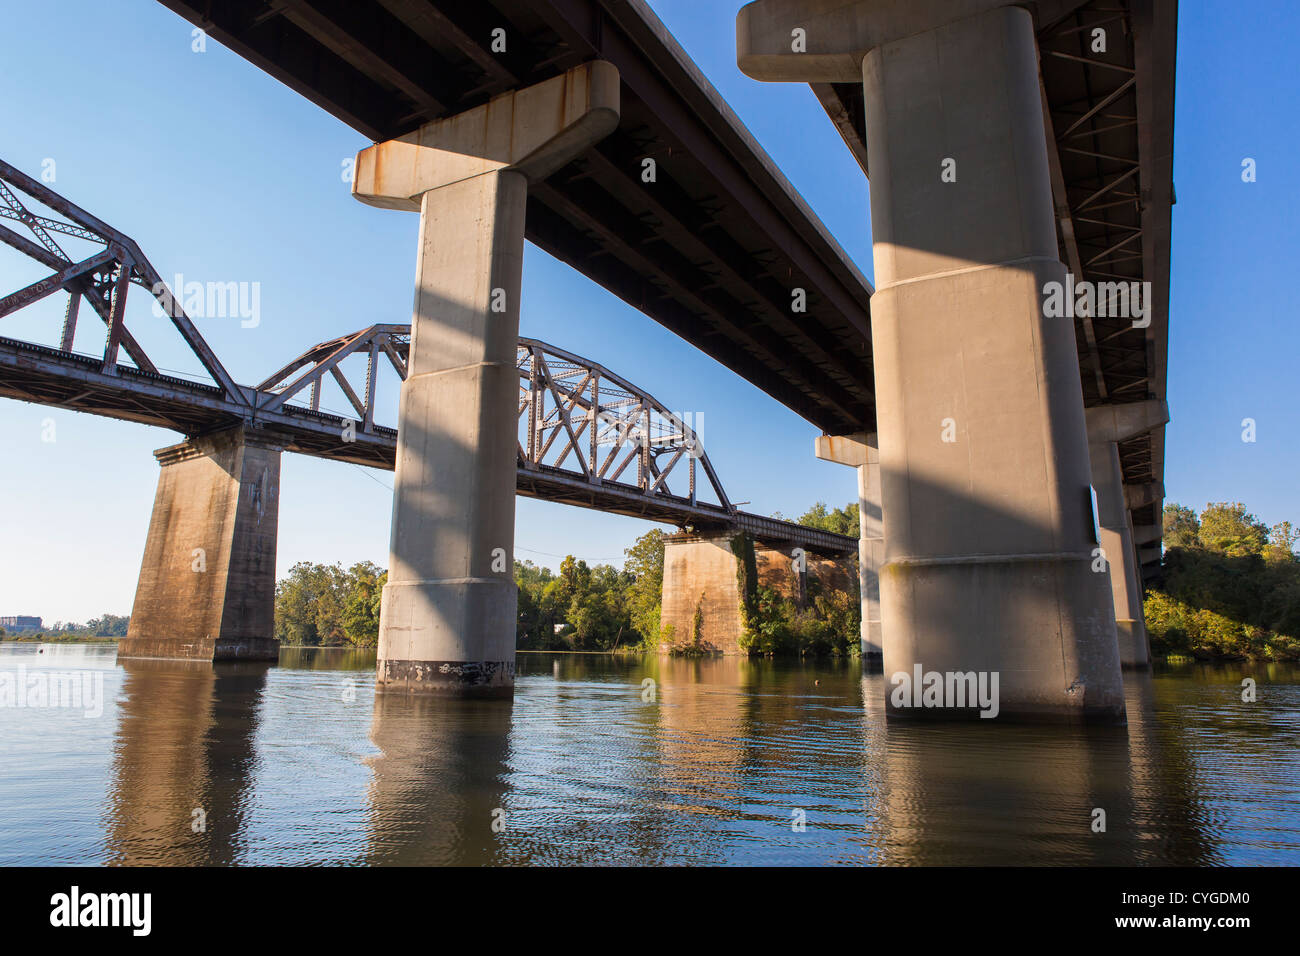 OCCOQUAN, Virginie, USA - infrastructure et de l'appui des jetées et des ponts sur la route de fer Occoquon River. Banque D'Images